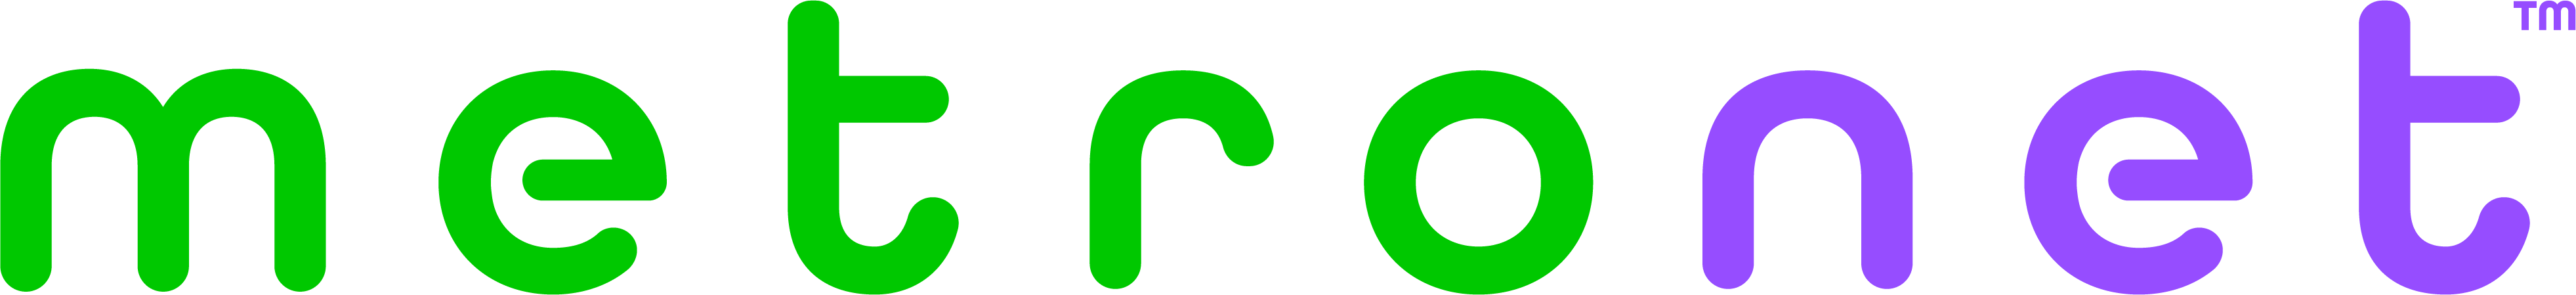 Metronet logo